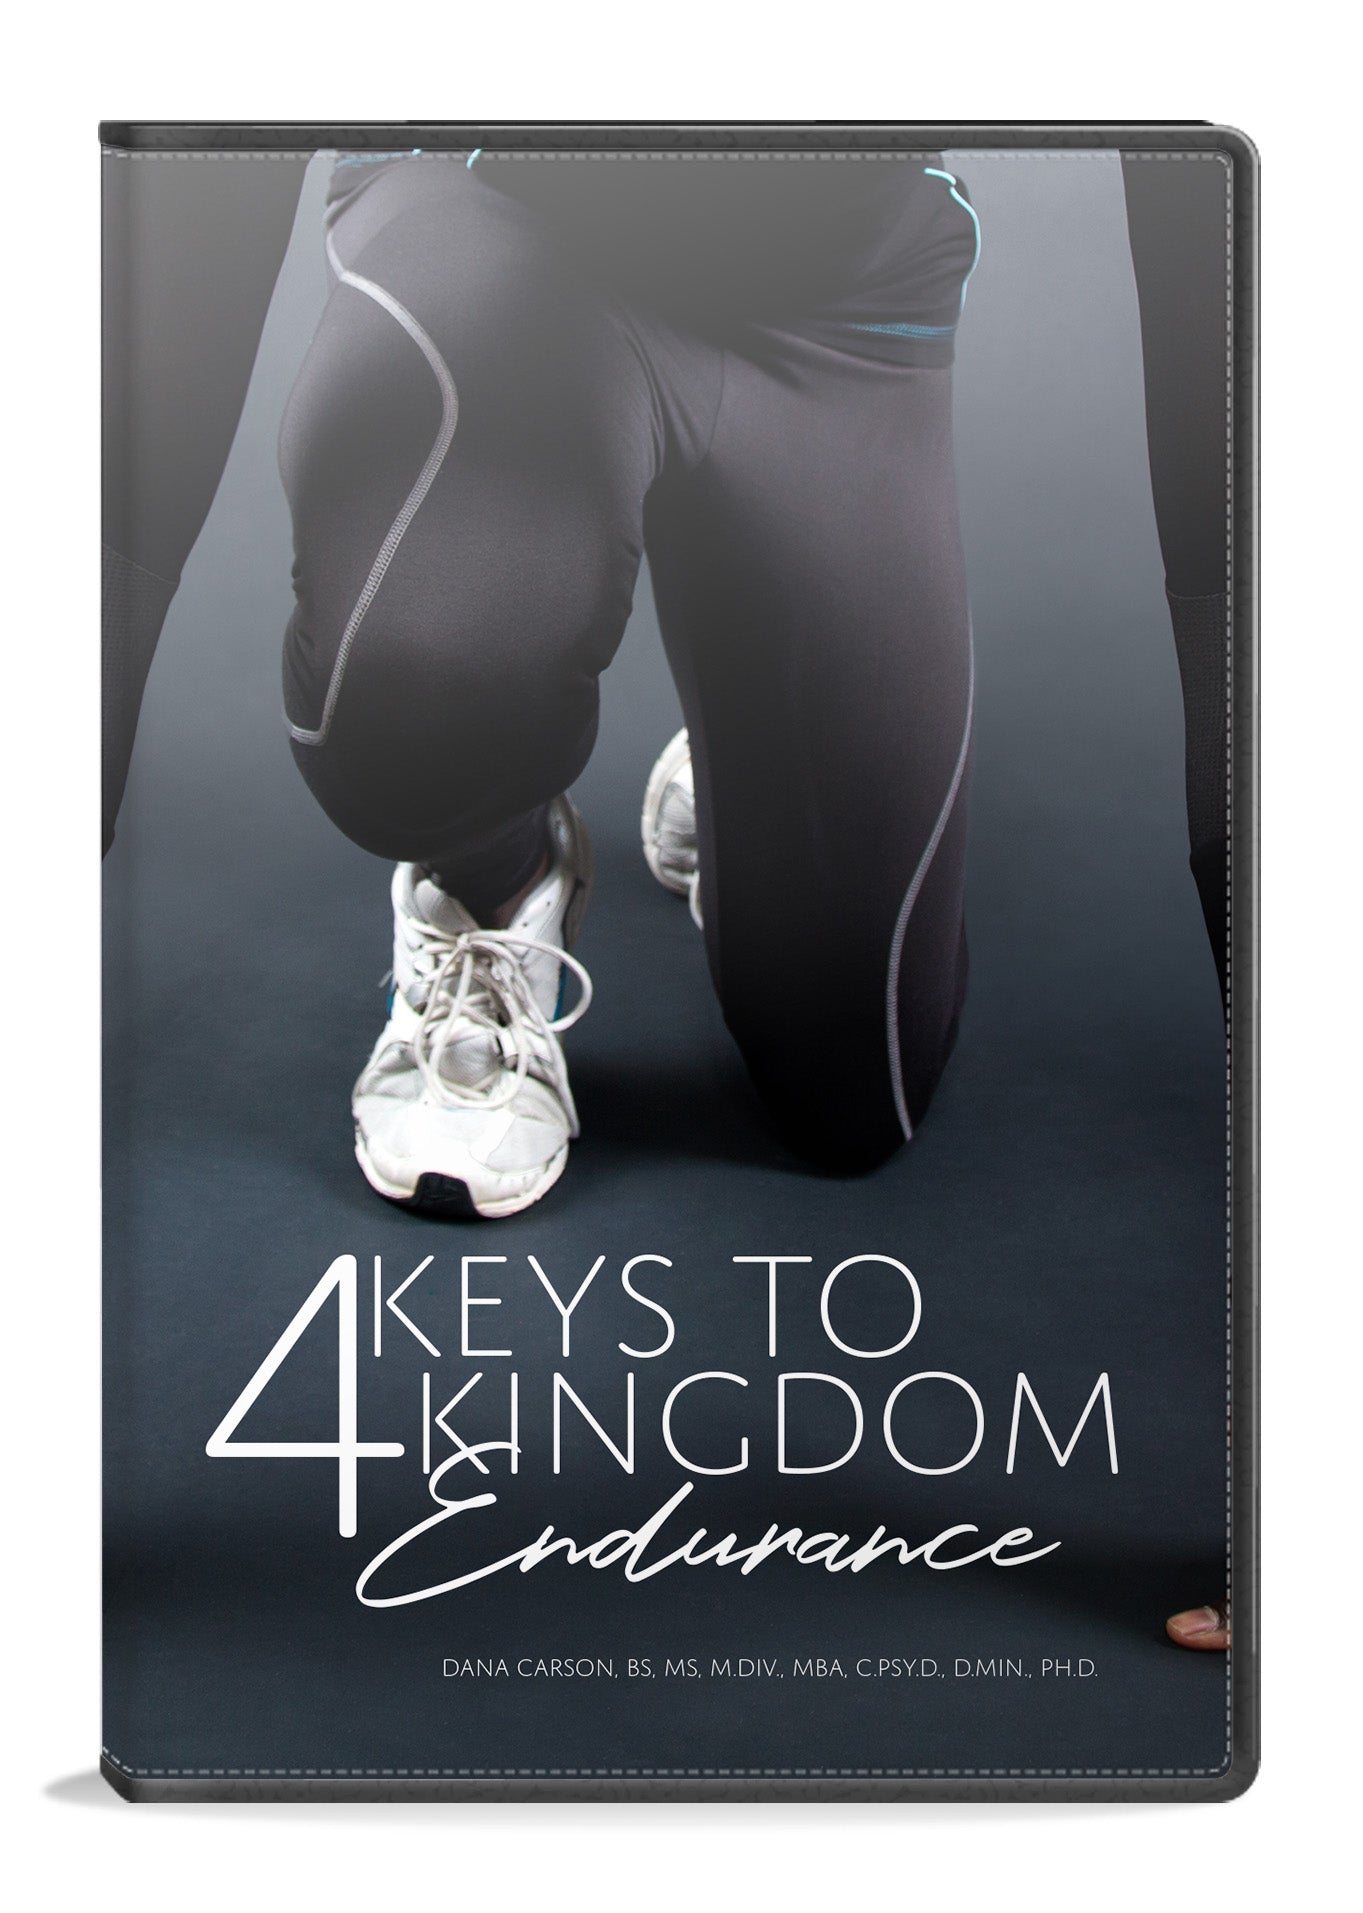 4 Keys to Kingdom Endurance